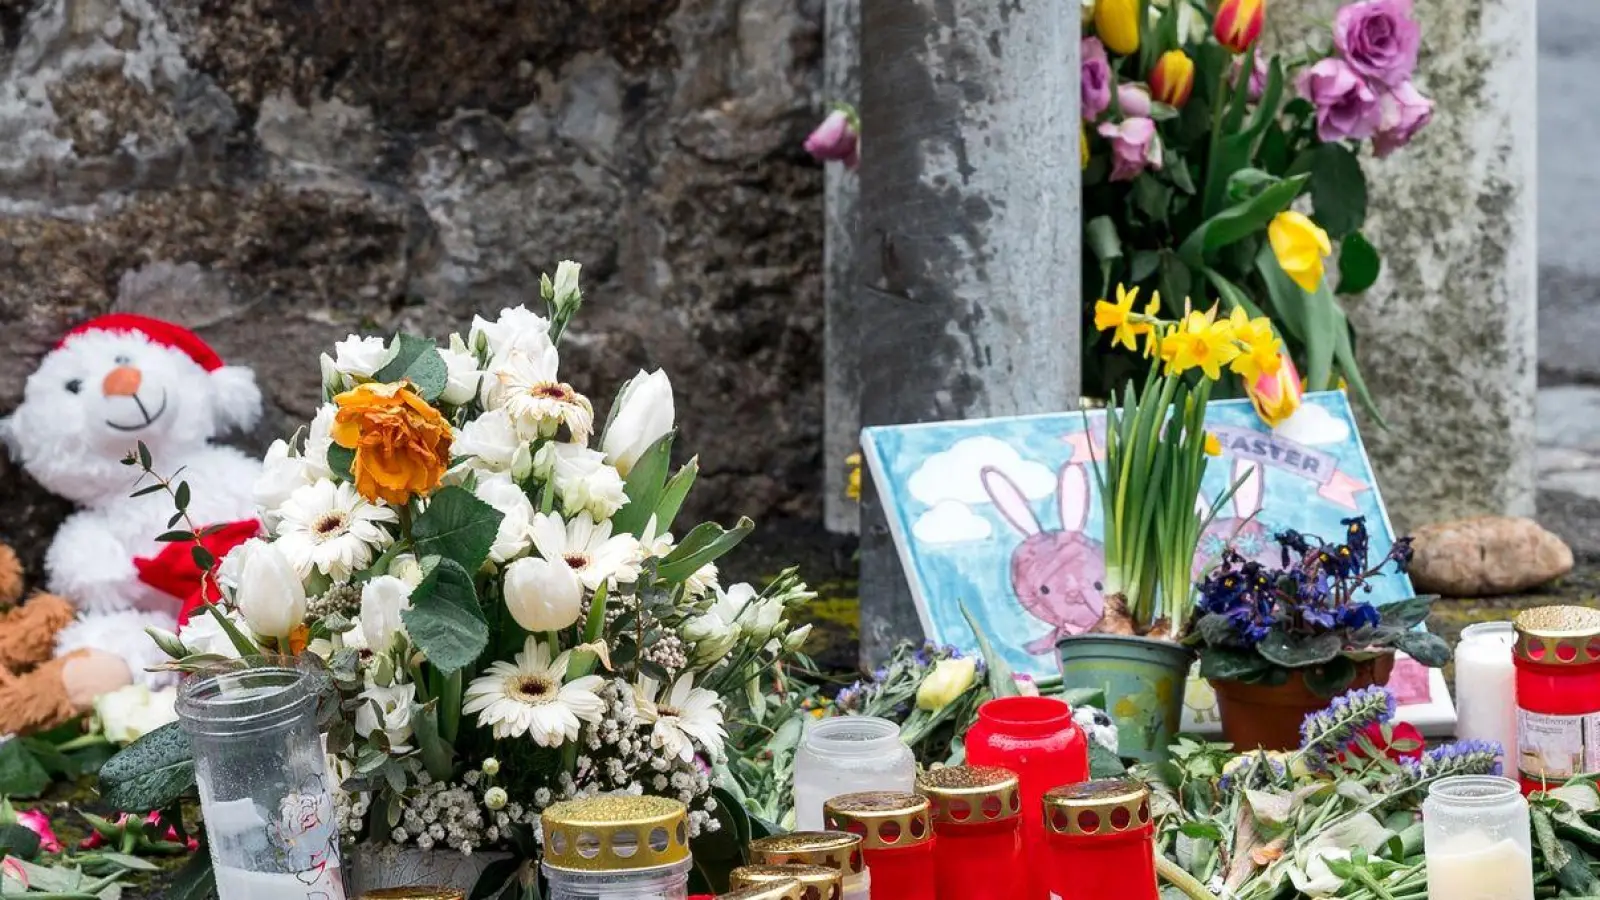 Blumen, Kuscheltiere und Kerzen vor dem Kinder- und Jugendhilfezentrum, in dem die Zehnjährige tot aufgefunden wurde. (Foto: Daniel Vogl/dpa)